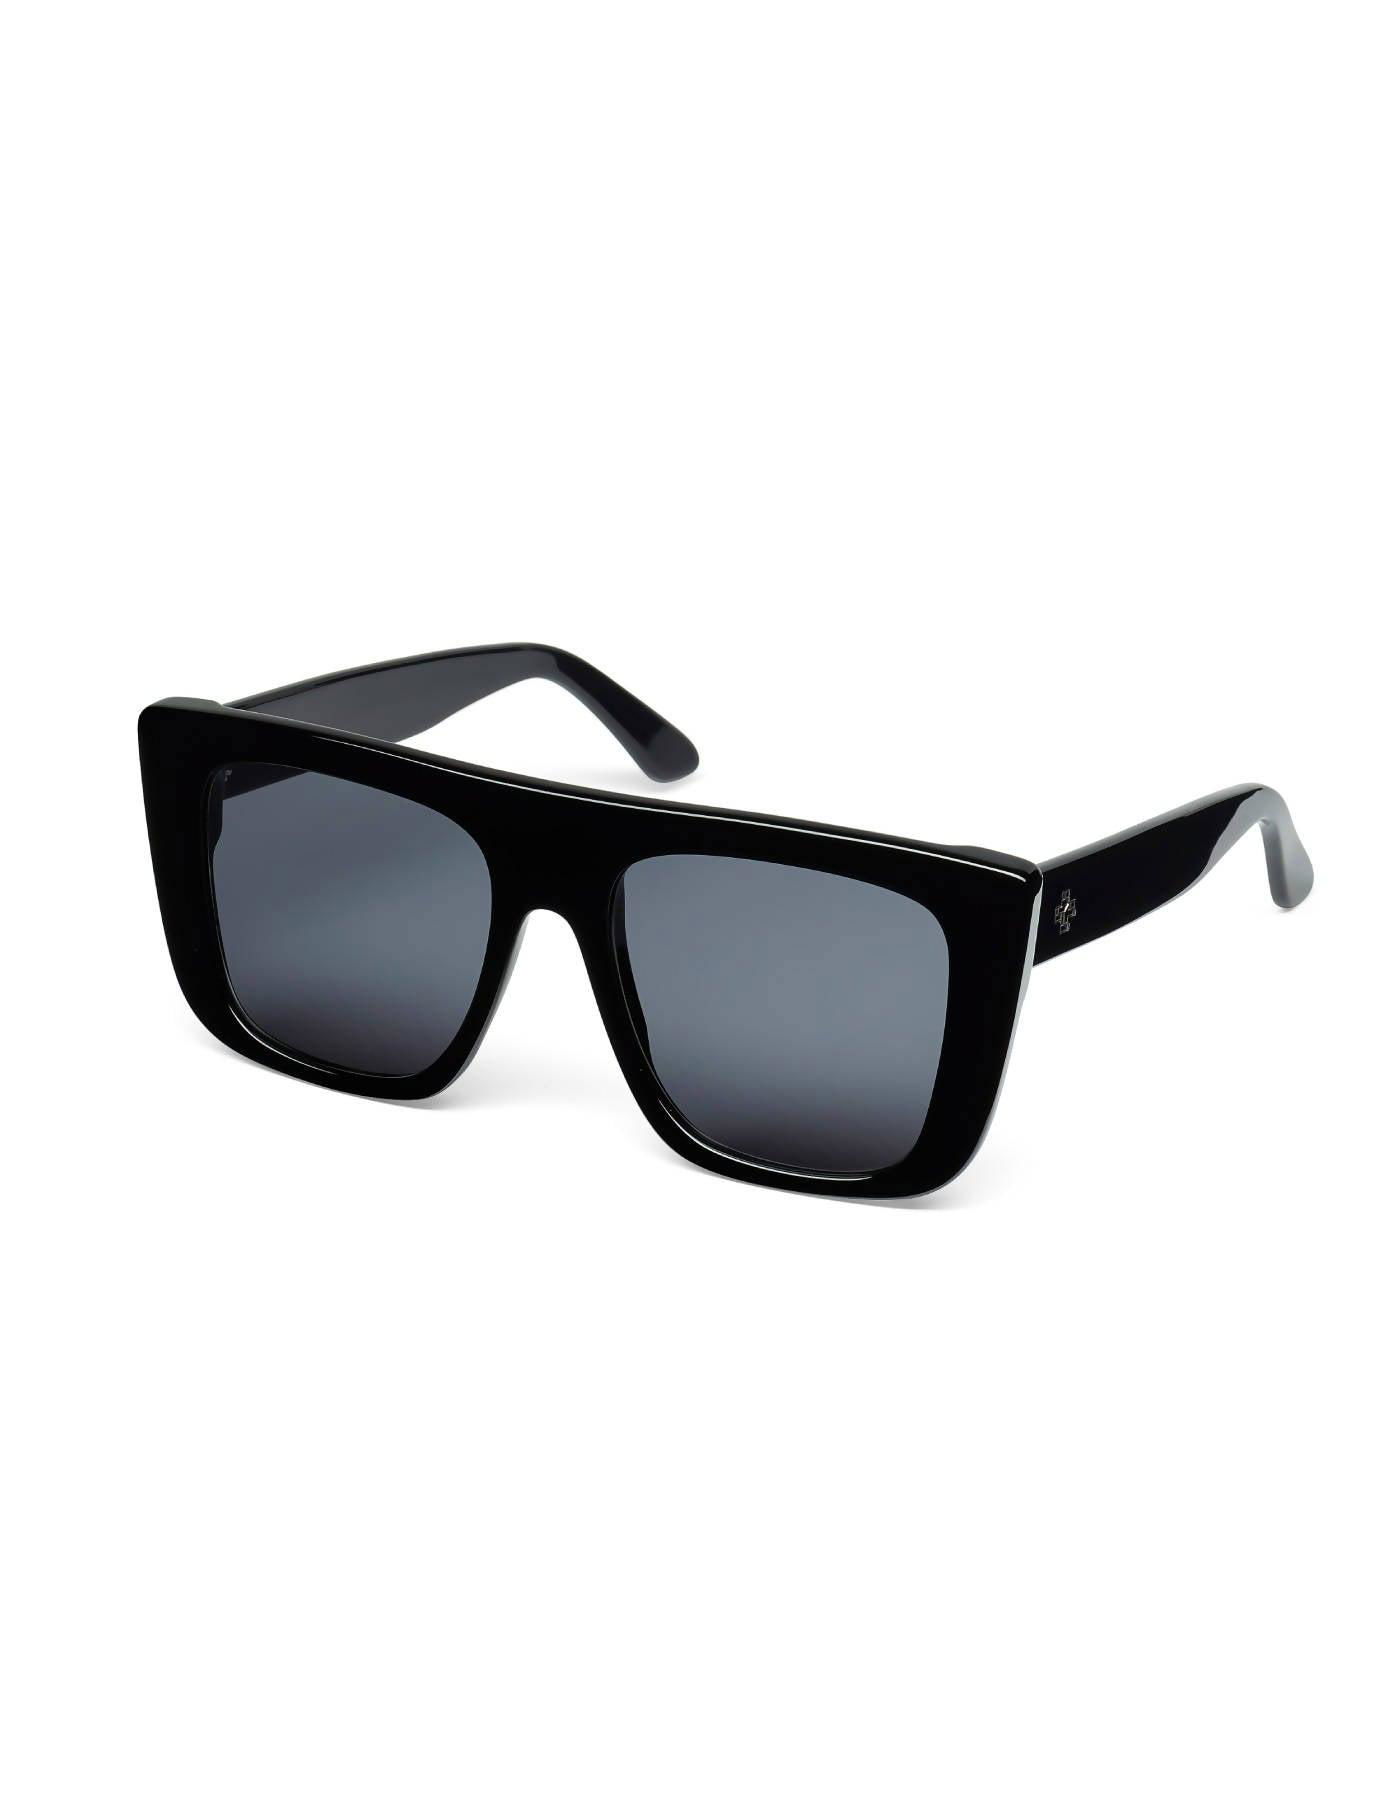 Gropius Sunglasses by MERCADER